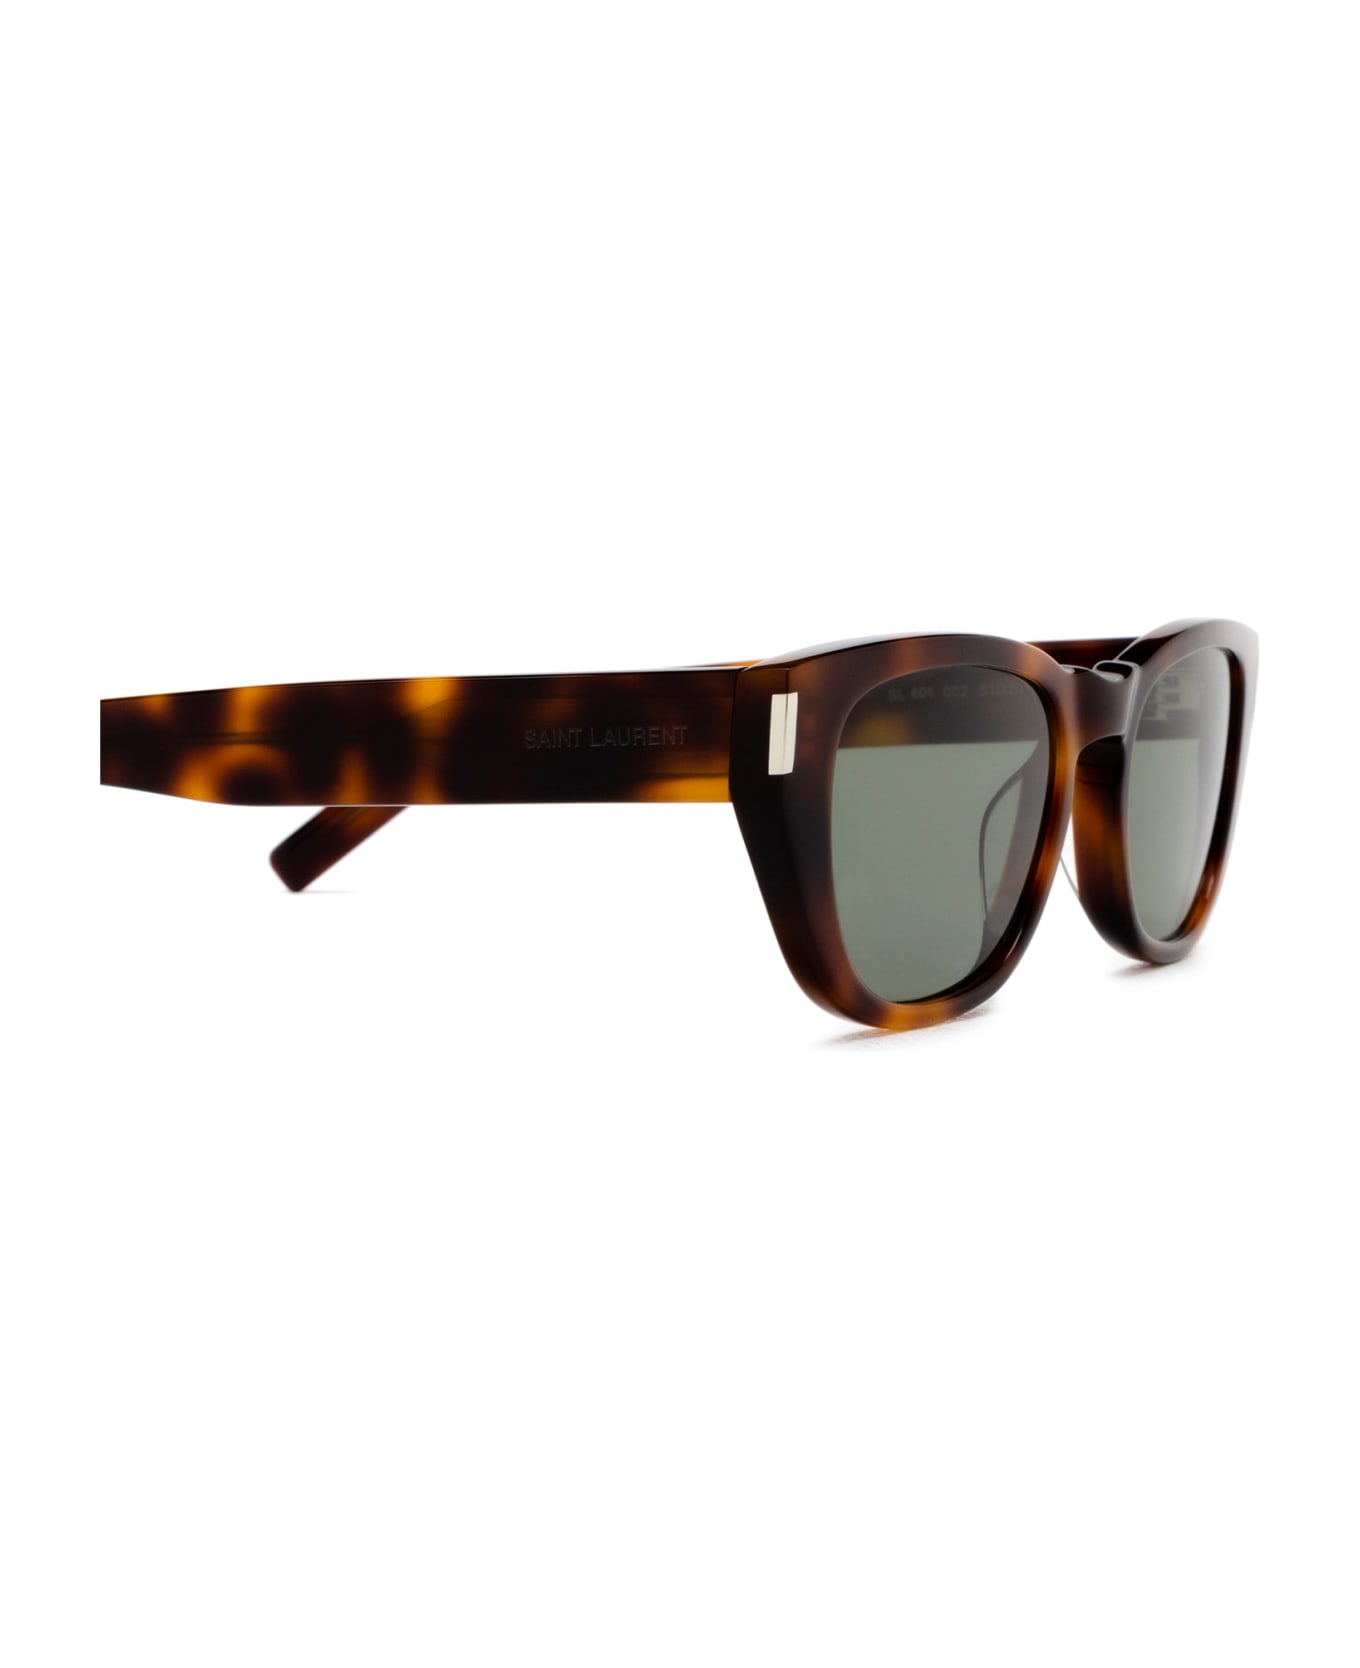 Saint Laurent Eyewear Sl 601 Havana Sunglasses - Havana